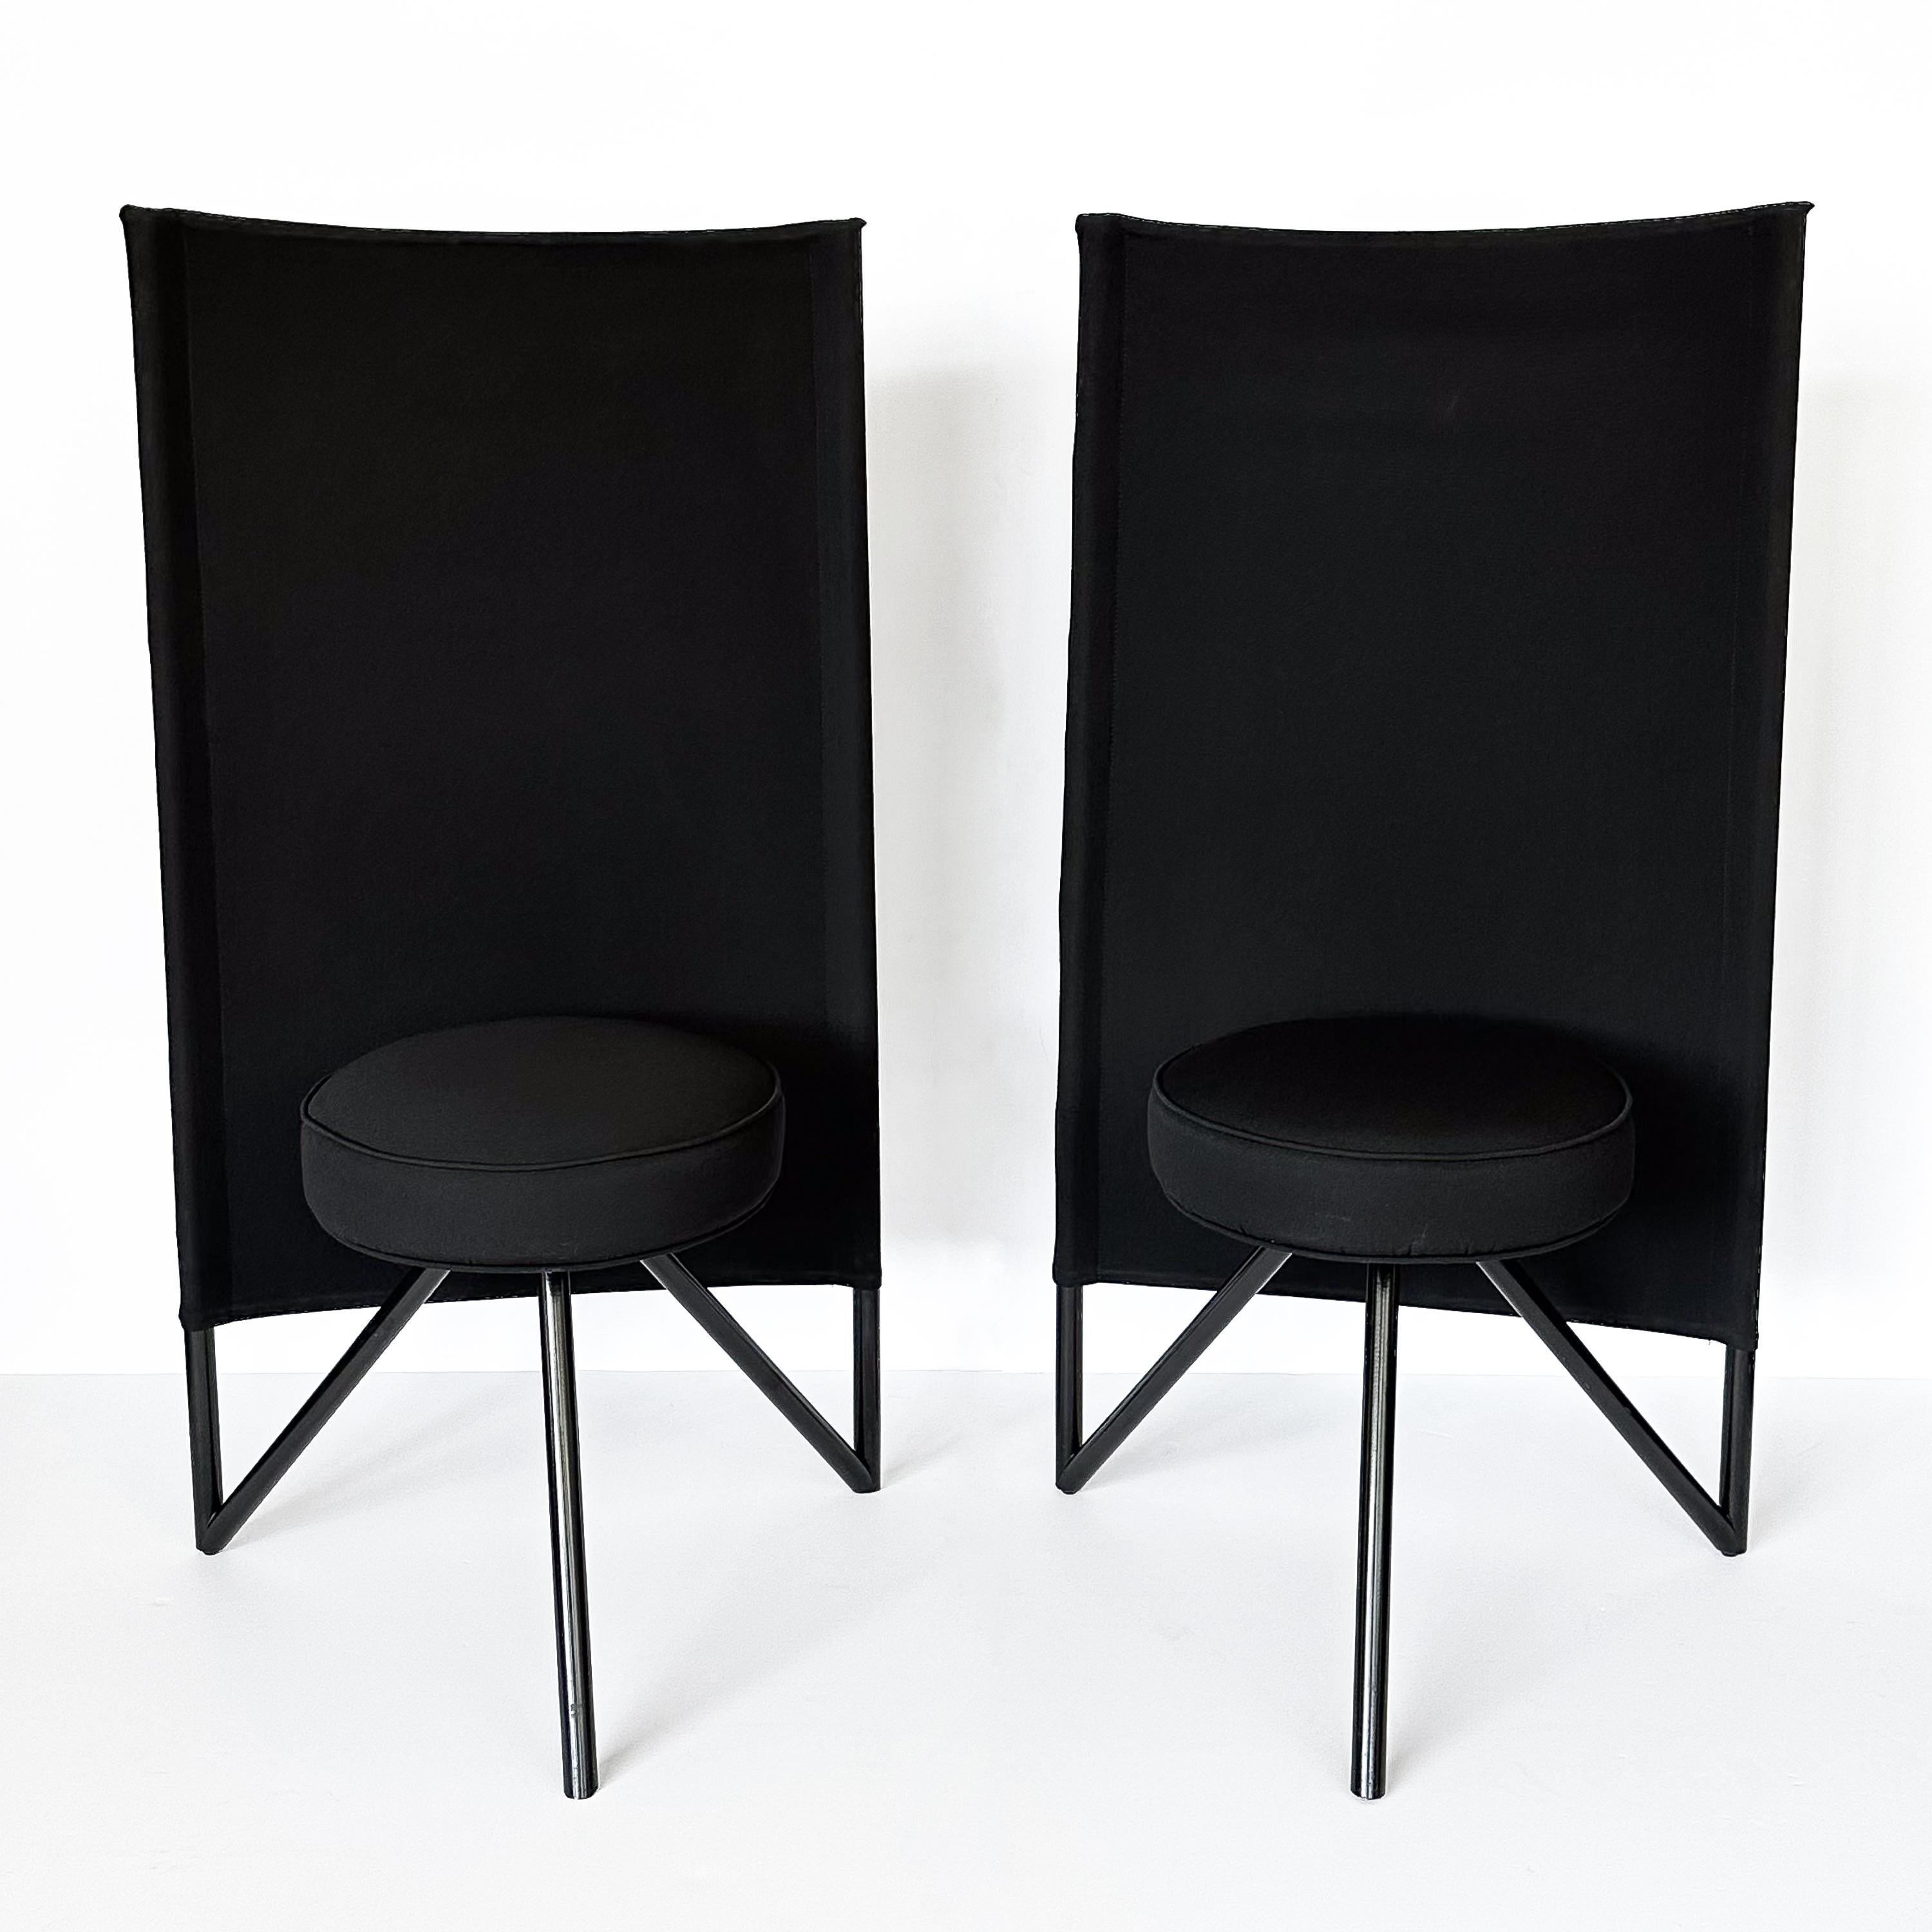 Fin du 20e siècle Paire de chaises postmodernes Miss Wirt Philippe Starck